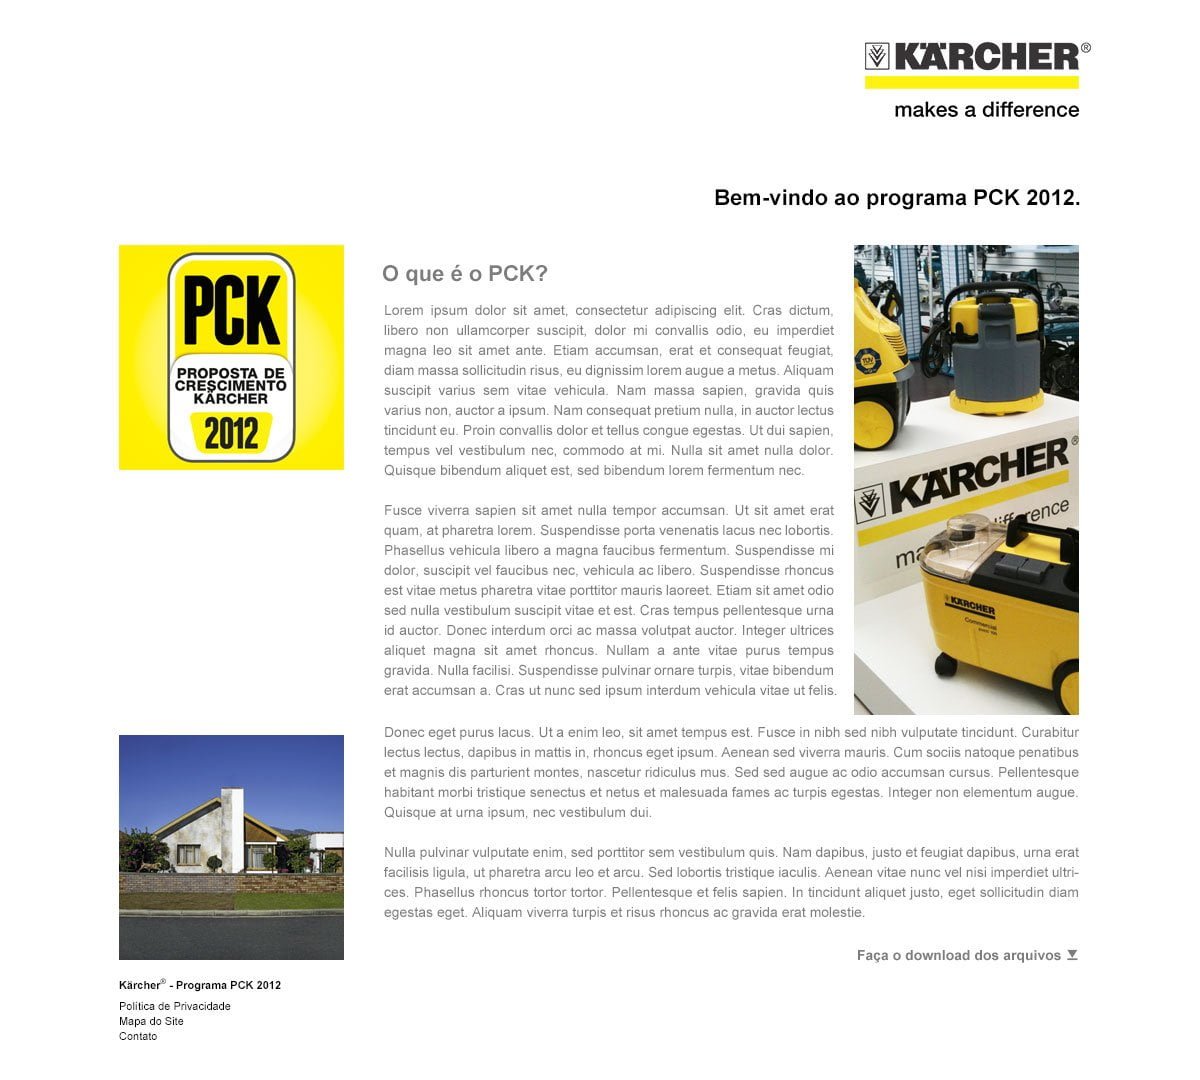 Programação hotsite Kärcher PCK - Página quem somos